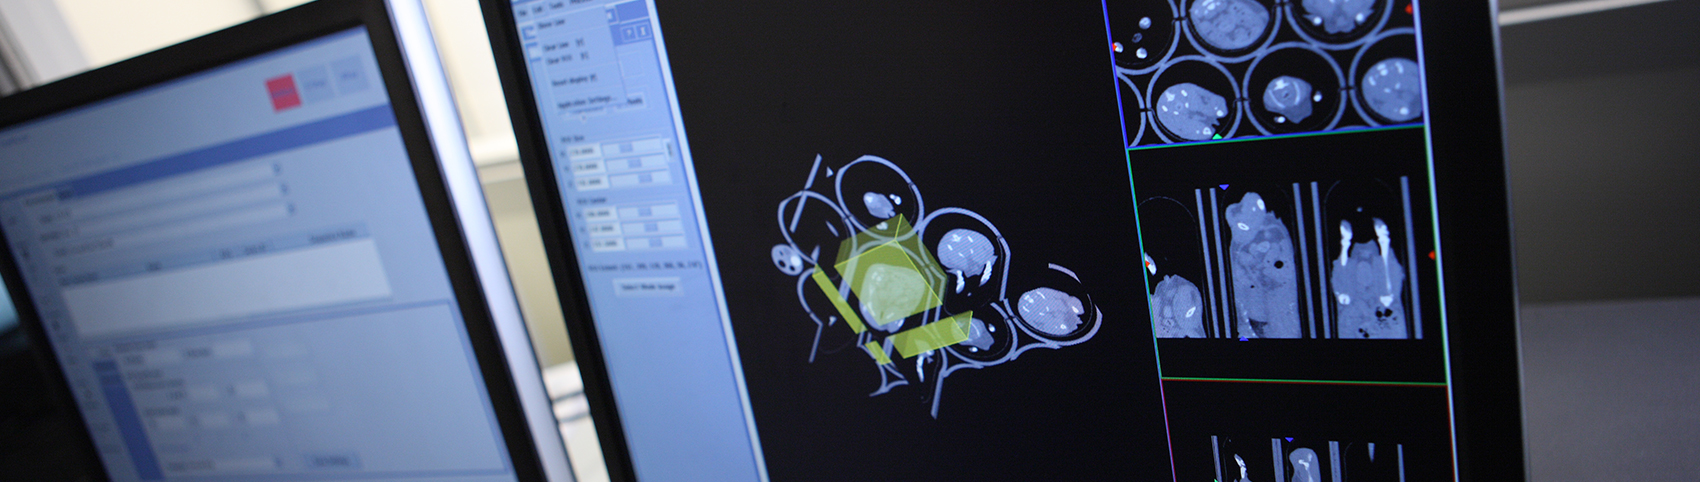 Bild von Bioluminenszenz-Bildgebung auf einem Computerbildschirm